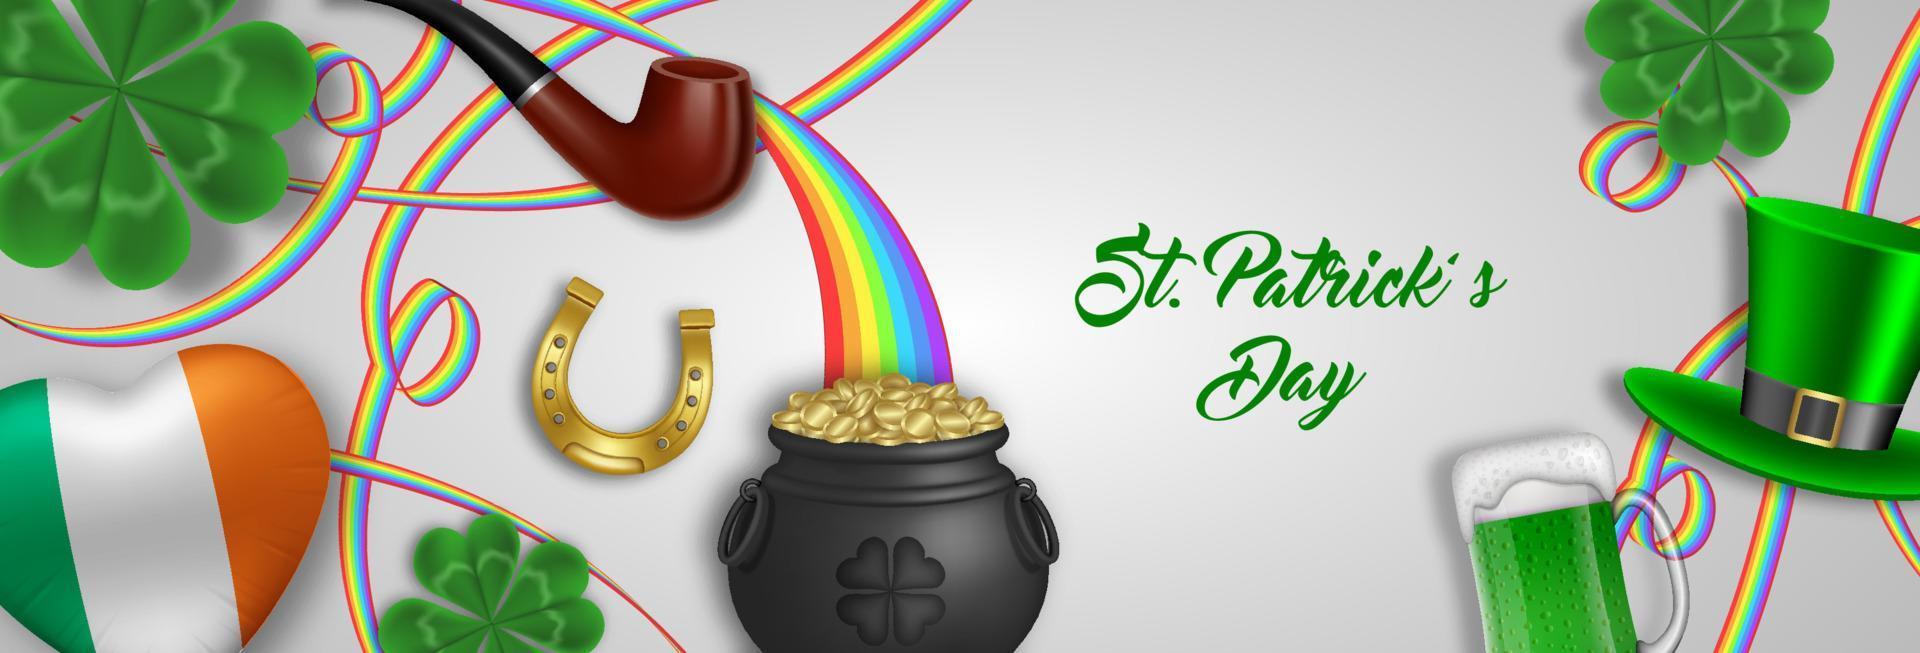 banner del día de san patricio con elementos y símbolos irlandeses vector